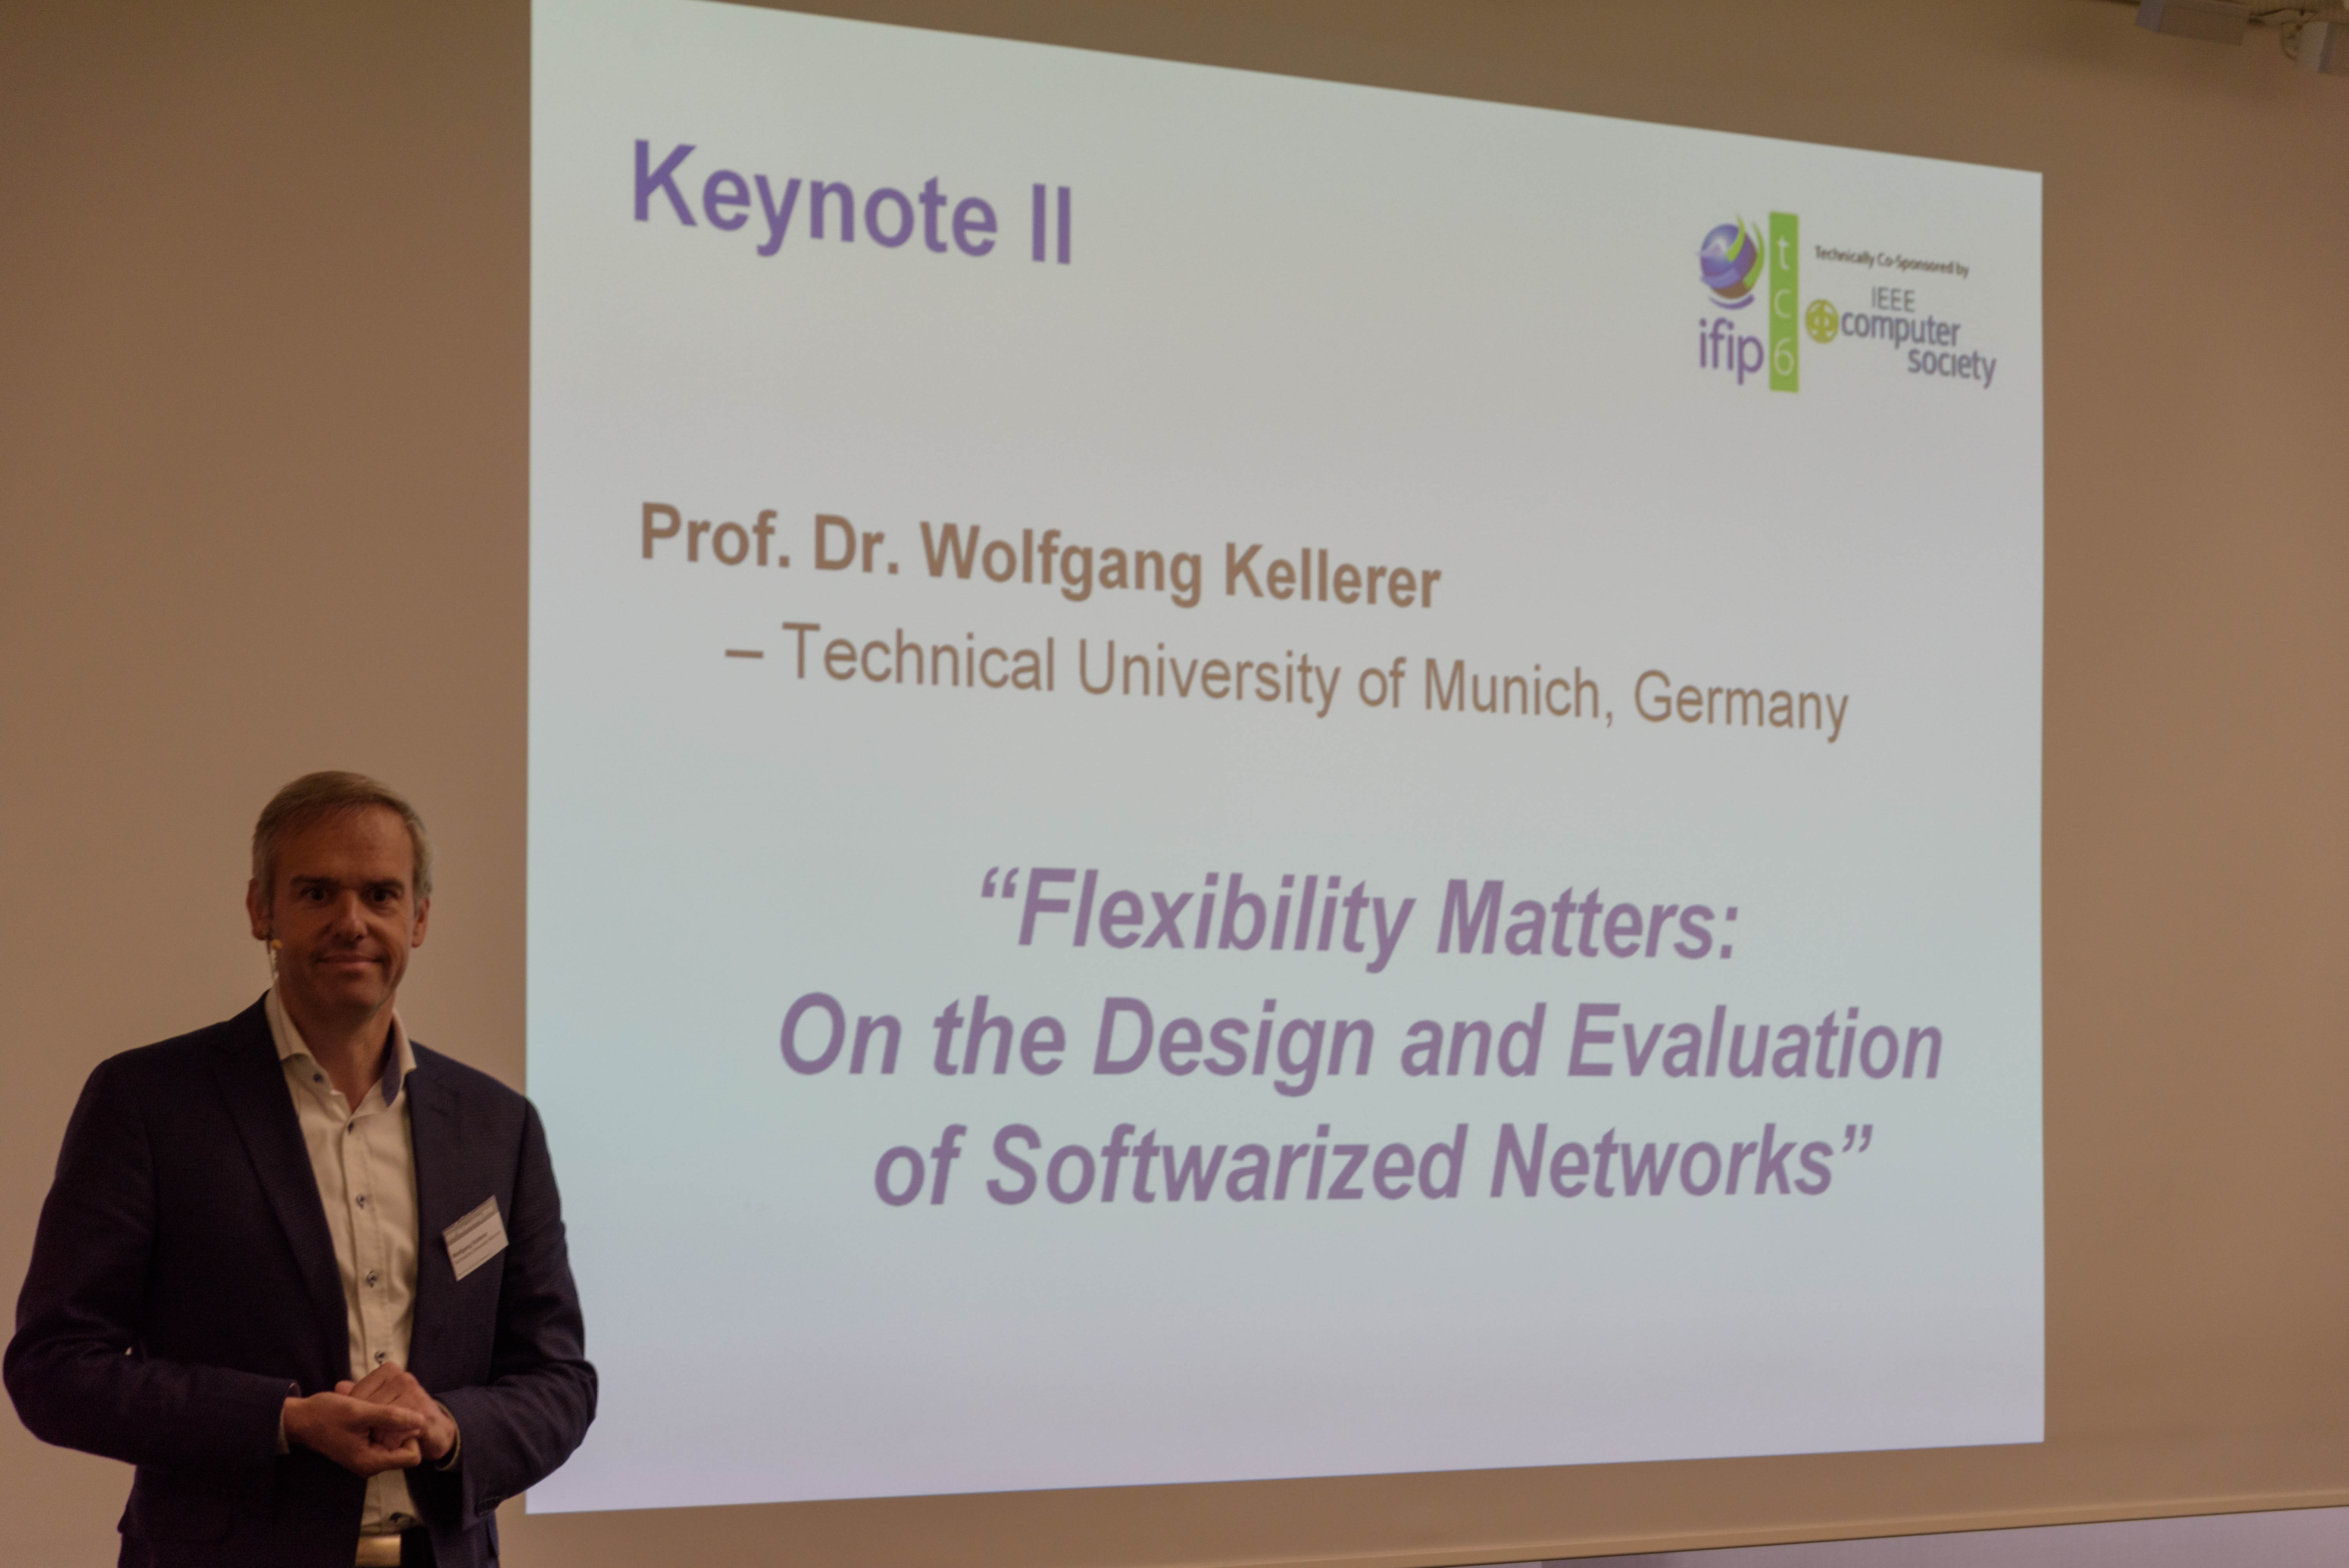 Prof Wolfgang Kellerer